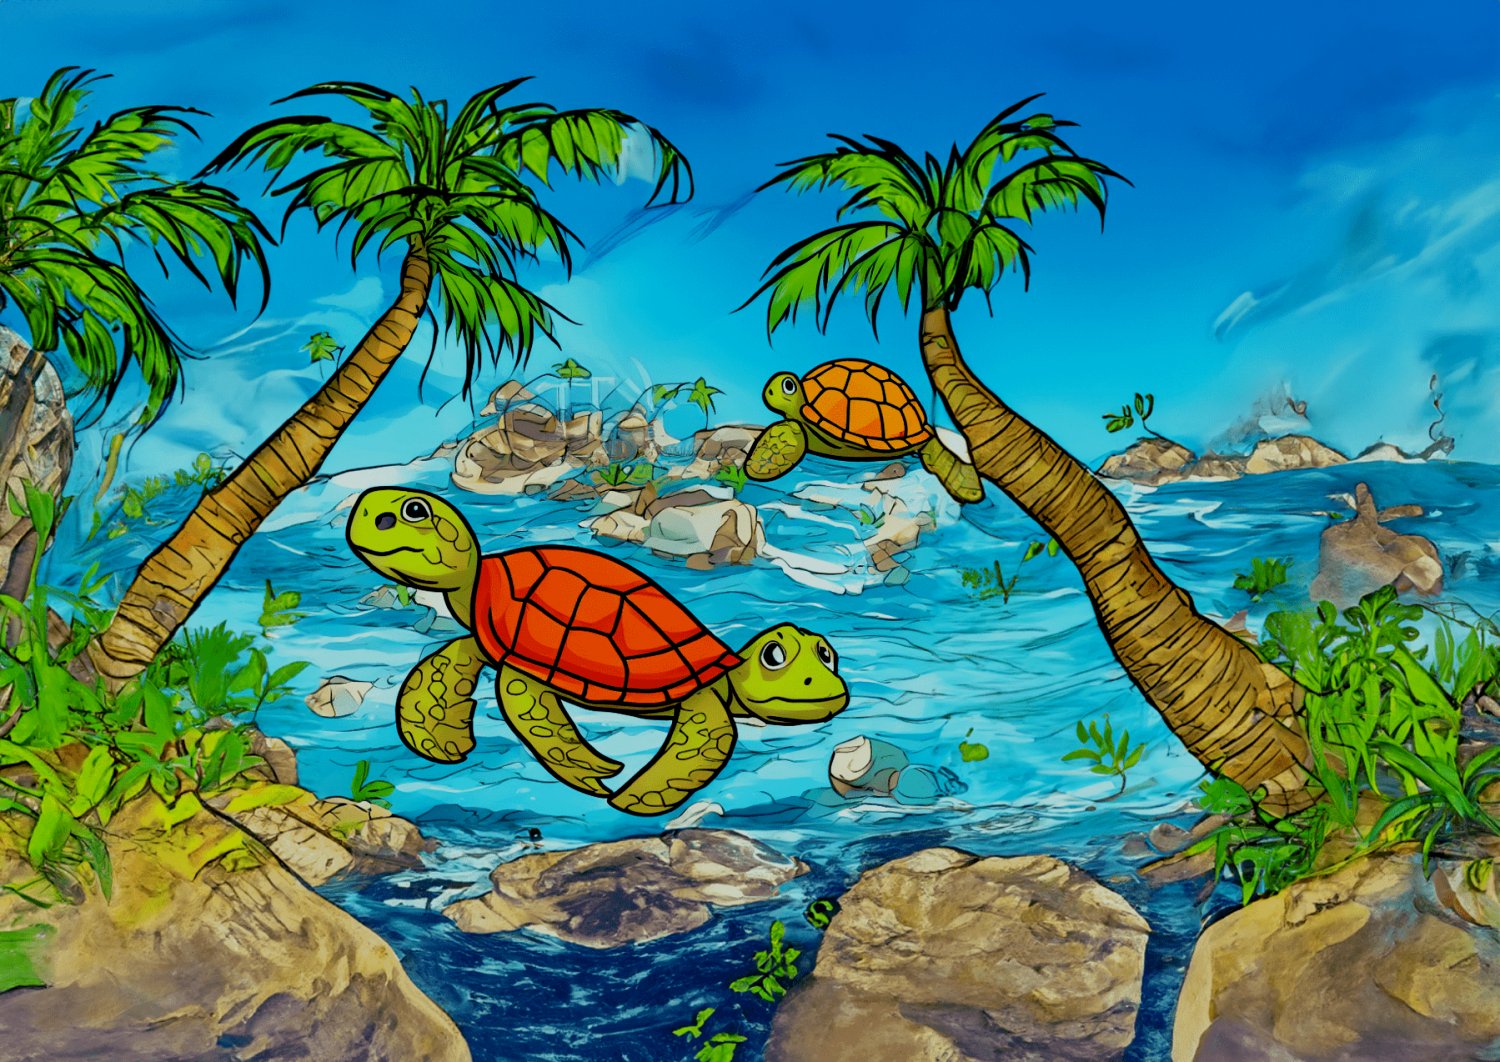 Python mit Schildkröte und Turtle Modul, Abläufe programmieren!